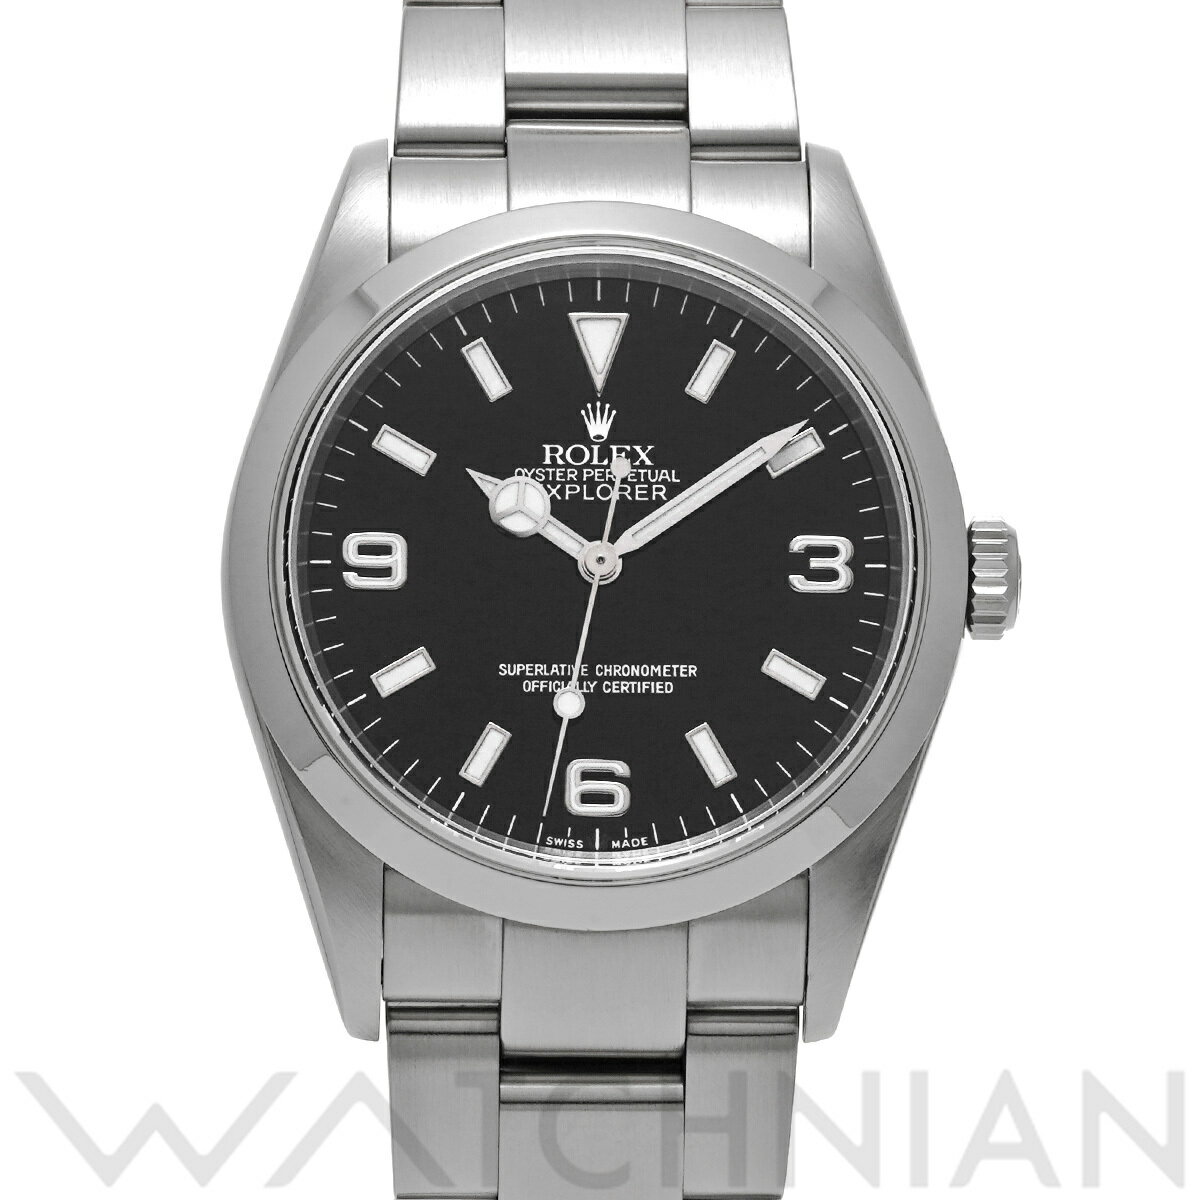 【4種選べるクーポン】【ローン60回払い無金利】【中古】 ロレックス ROLEX エクスプローラー 114270 P番(2000年頃製造) ブラック メンズ 腕時計 ロレックス 時計 高級腕時計 ブランド